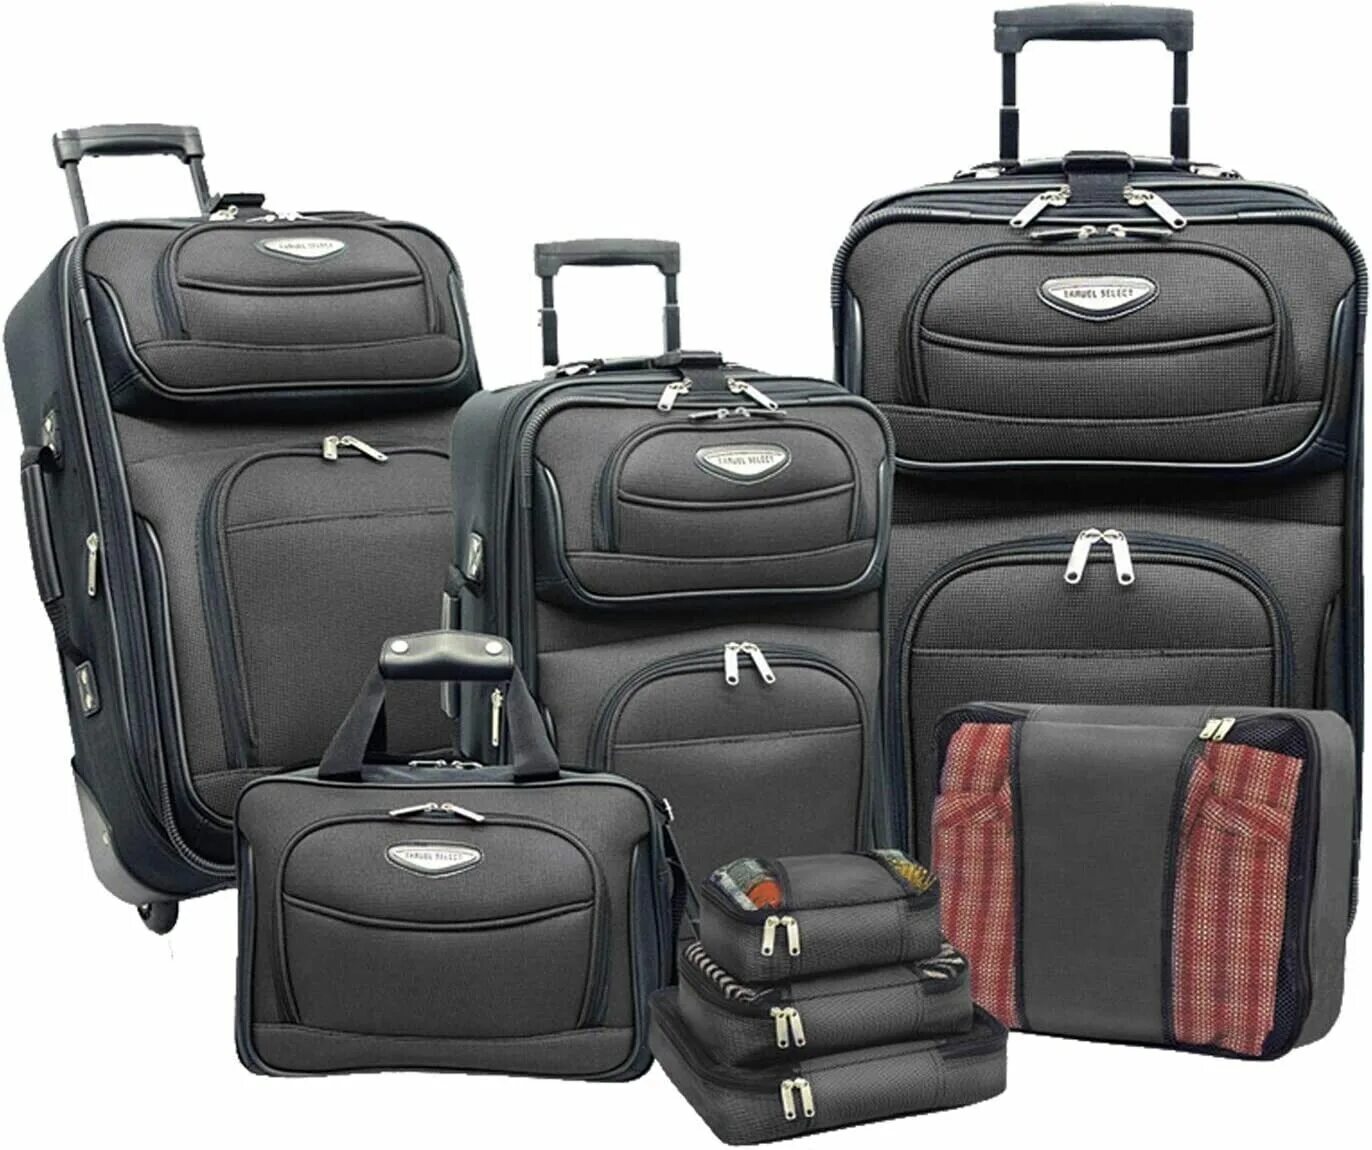 Большой сумка чемодан. Сумка кейс самсонайт. Сумка дорожная Bag and Baggage. Чемодан 121 Travel Luggage. Чемодан Amsterdam Luggage.